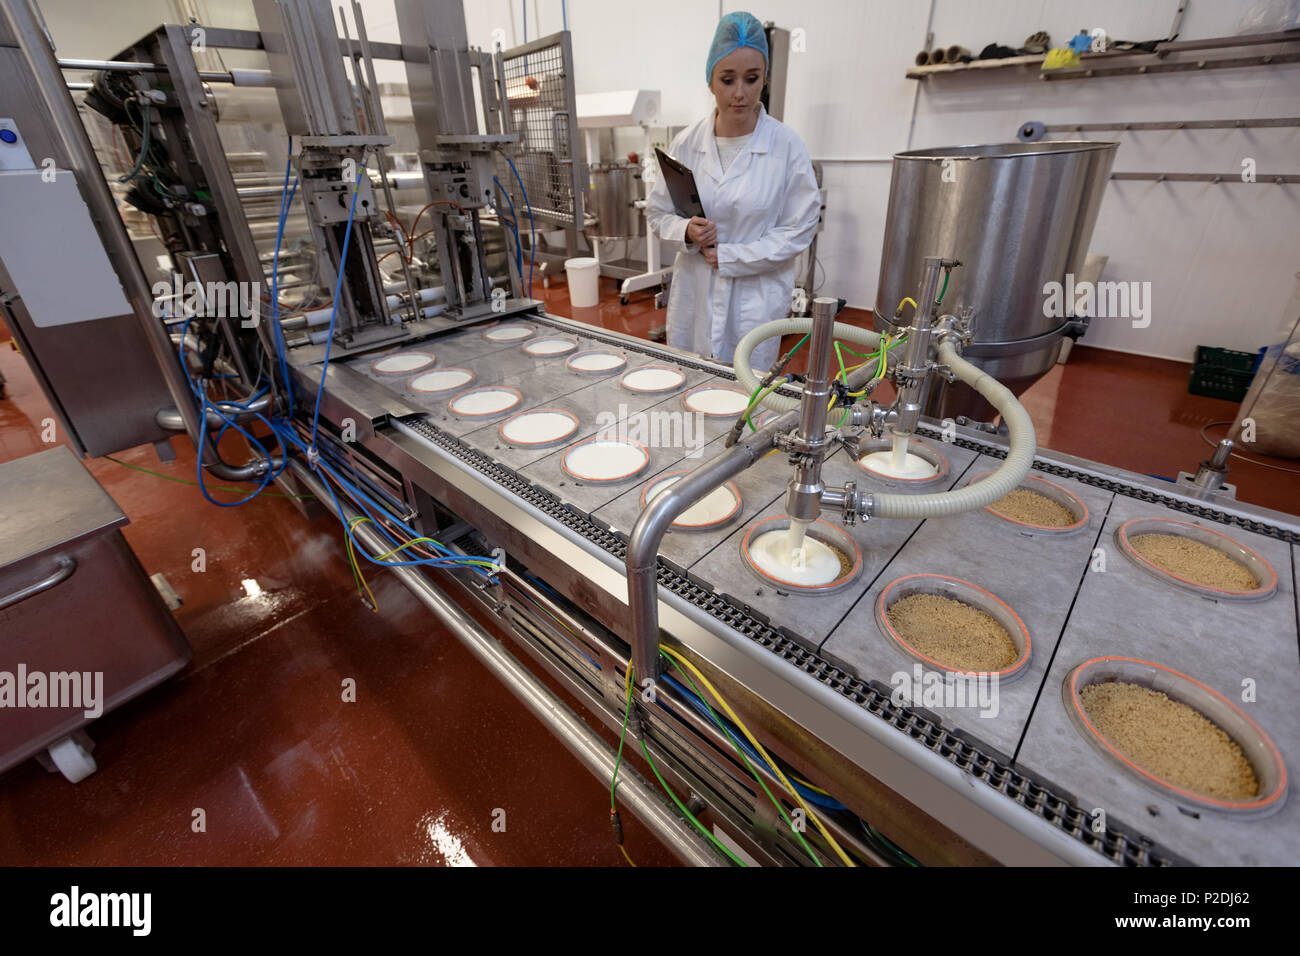 Weibliche Arbeitnehmer überwachung Lebensmittel in der Nähe von Produktionslinie Stockfoto